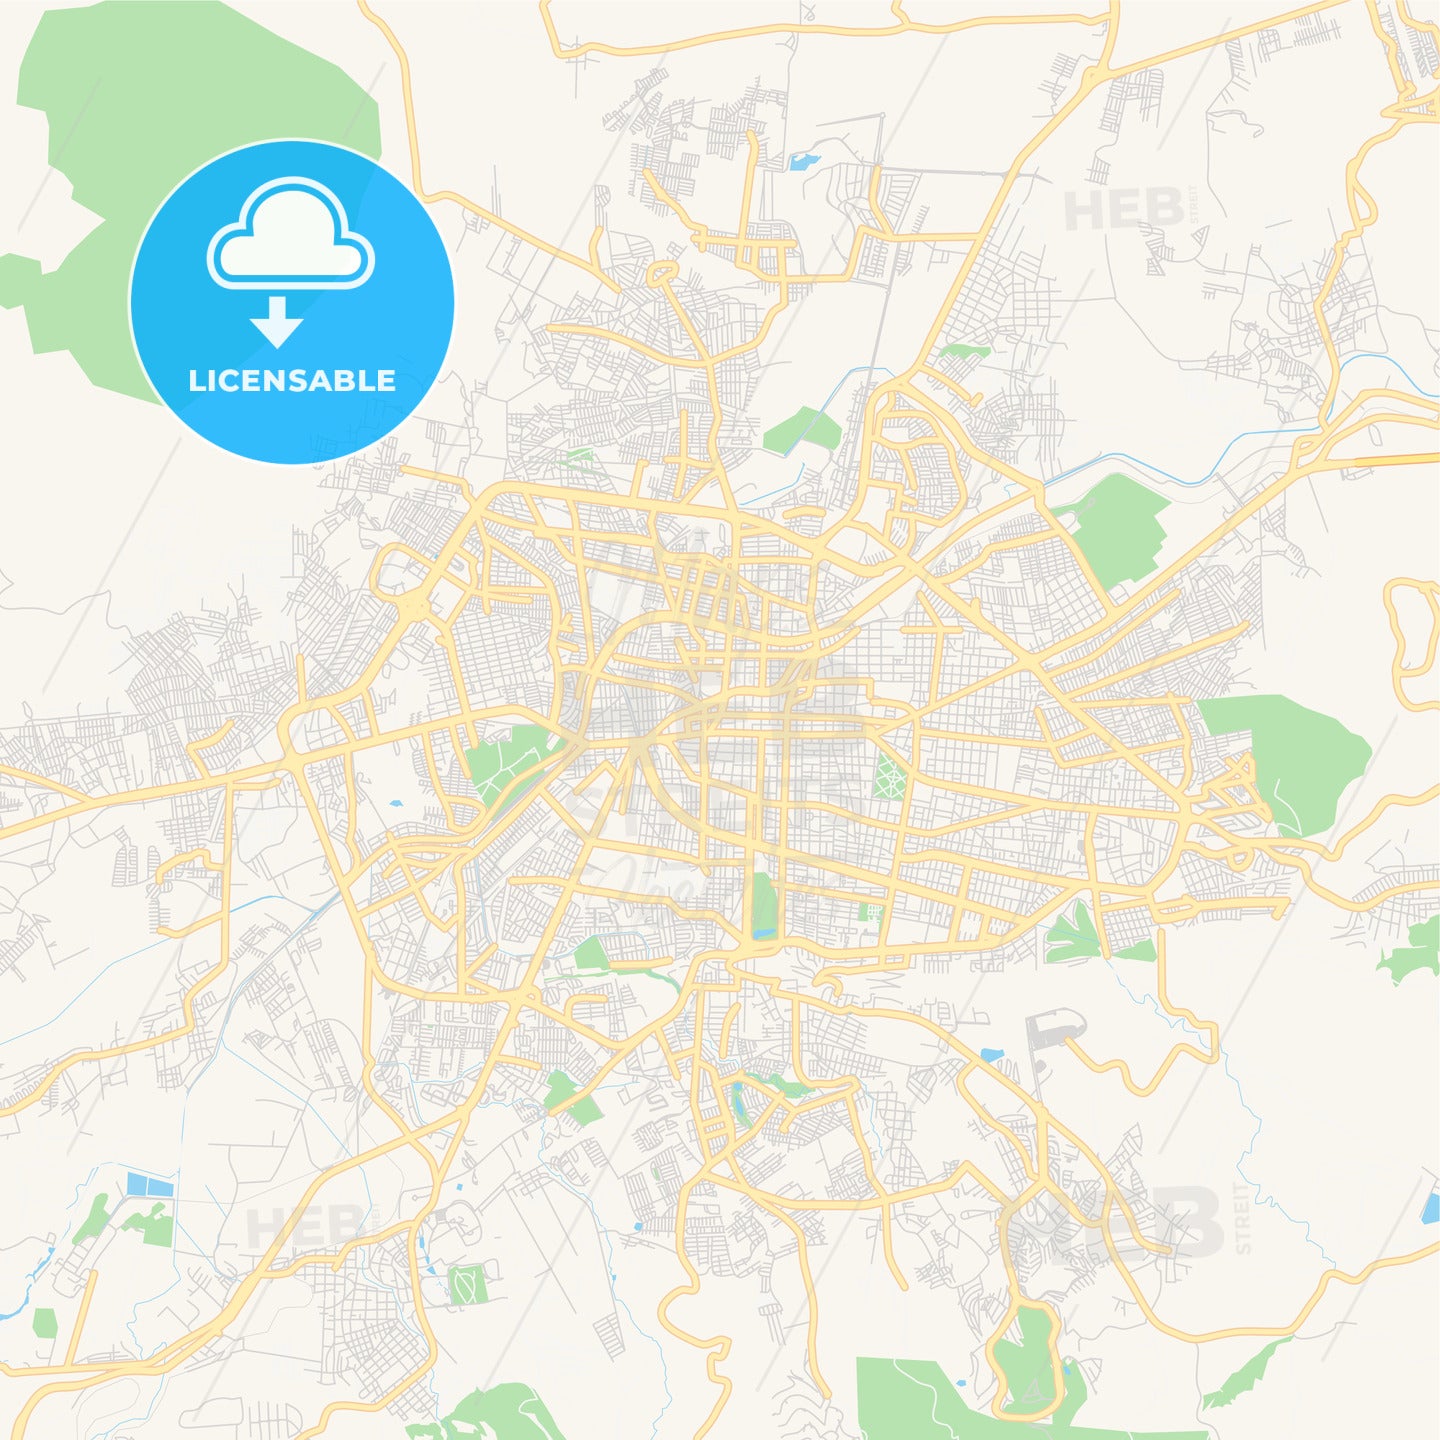 Empty vector map of Morelia, Michoacán, Mexico